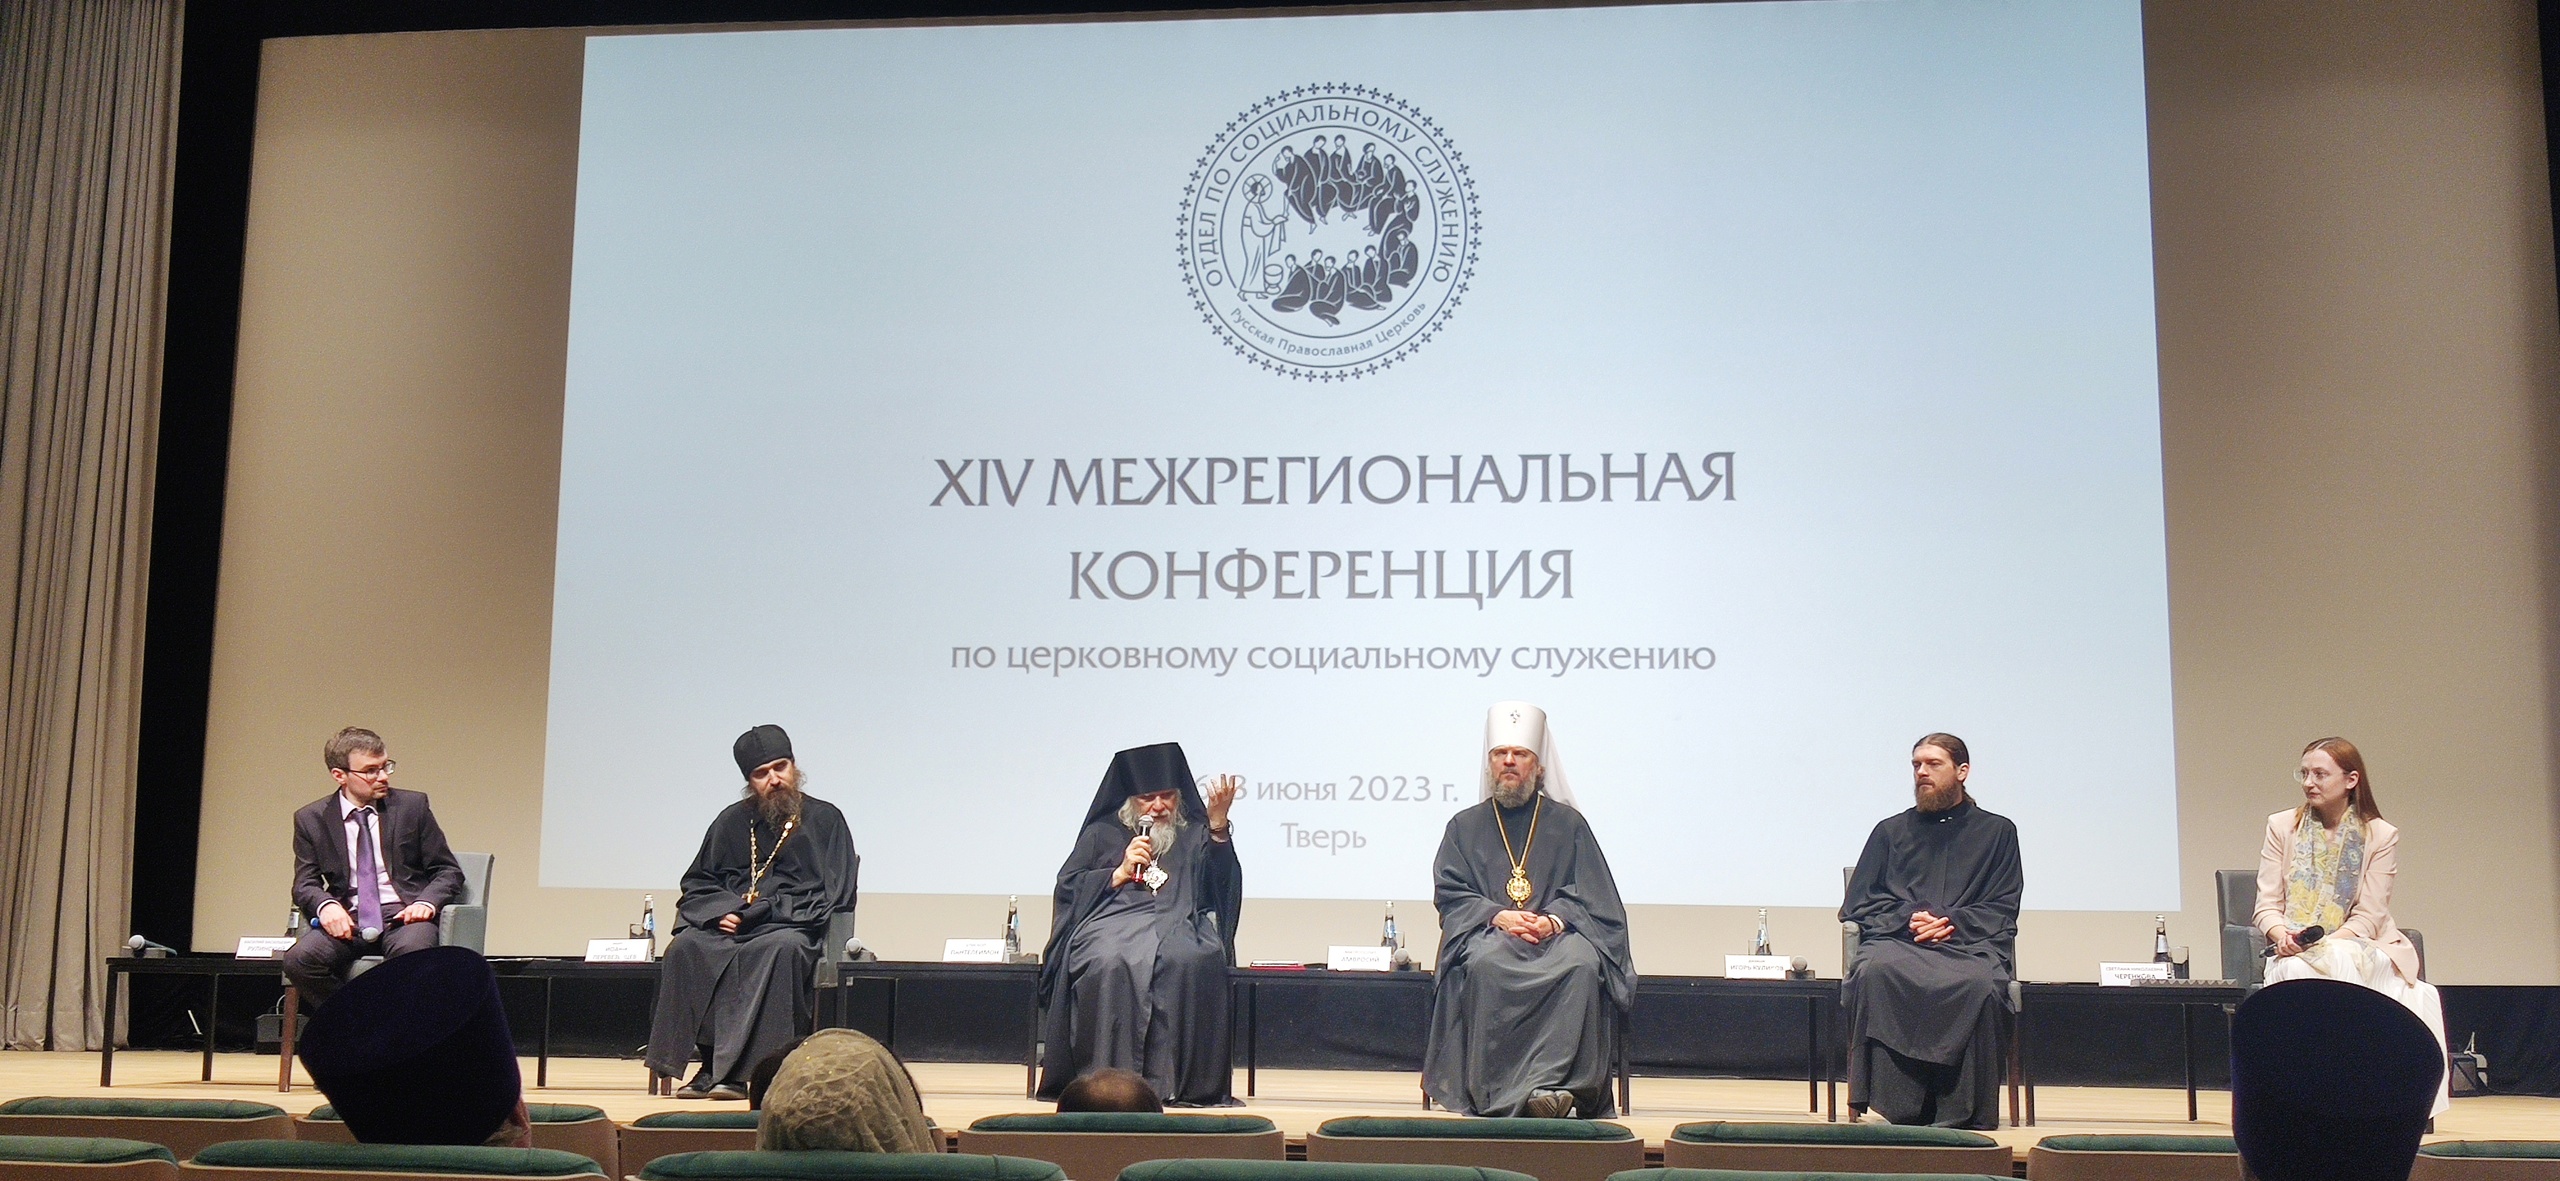 ХIV Межрегиональная конференция по социальному служению Русской Православной Церкви